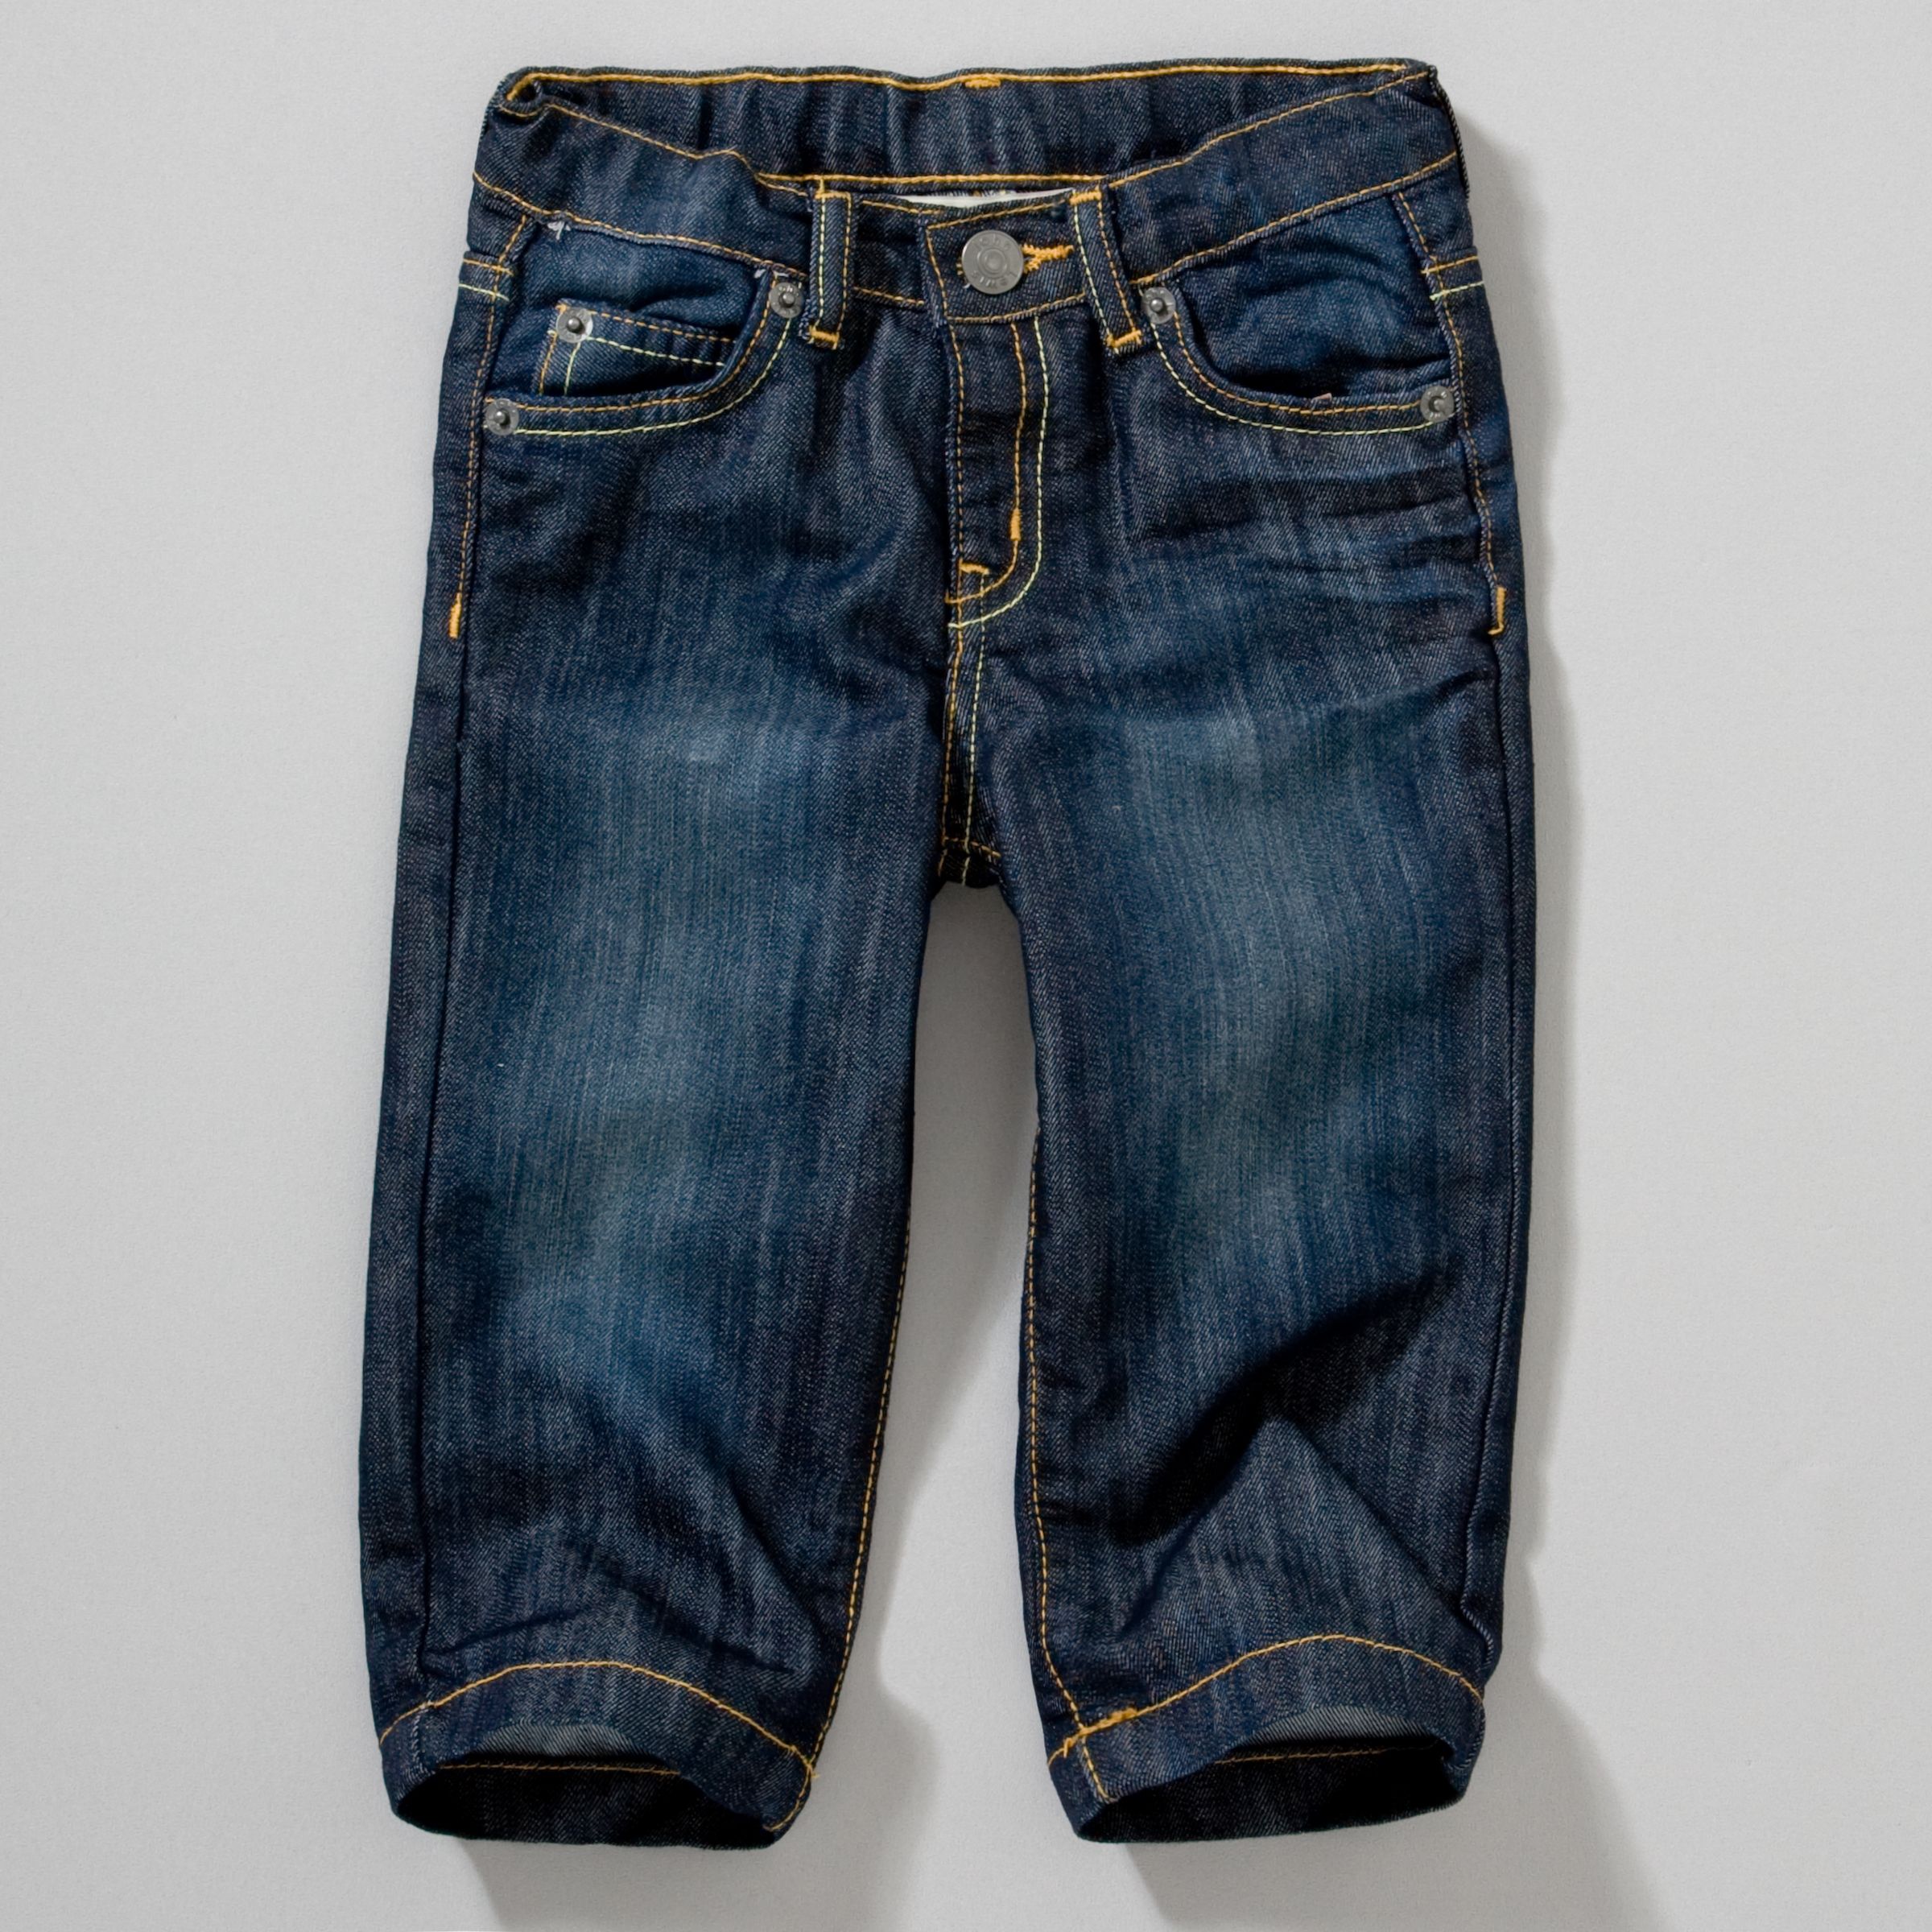 John Lewis Basic Jeans 39983